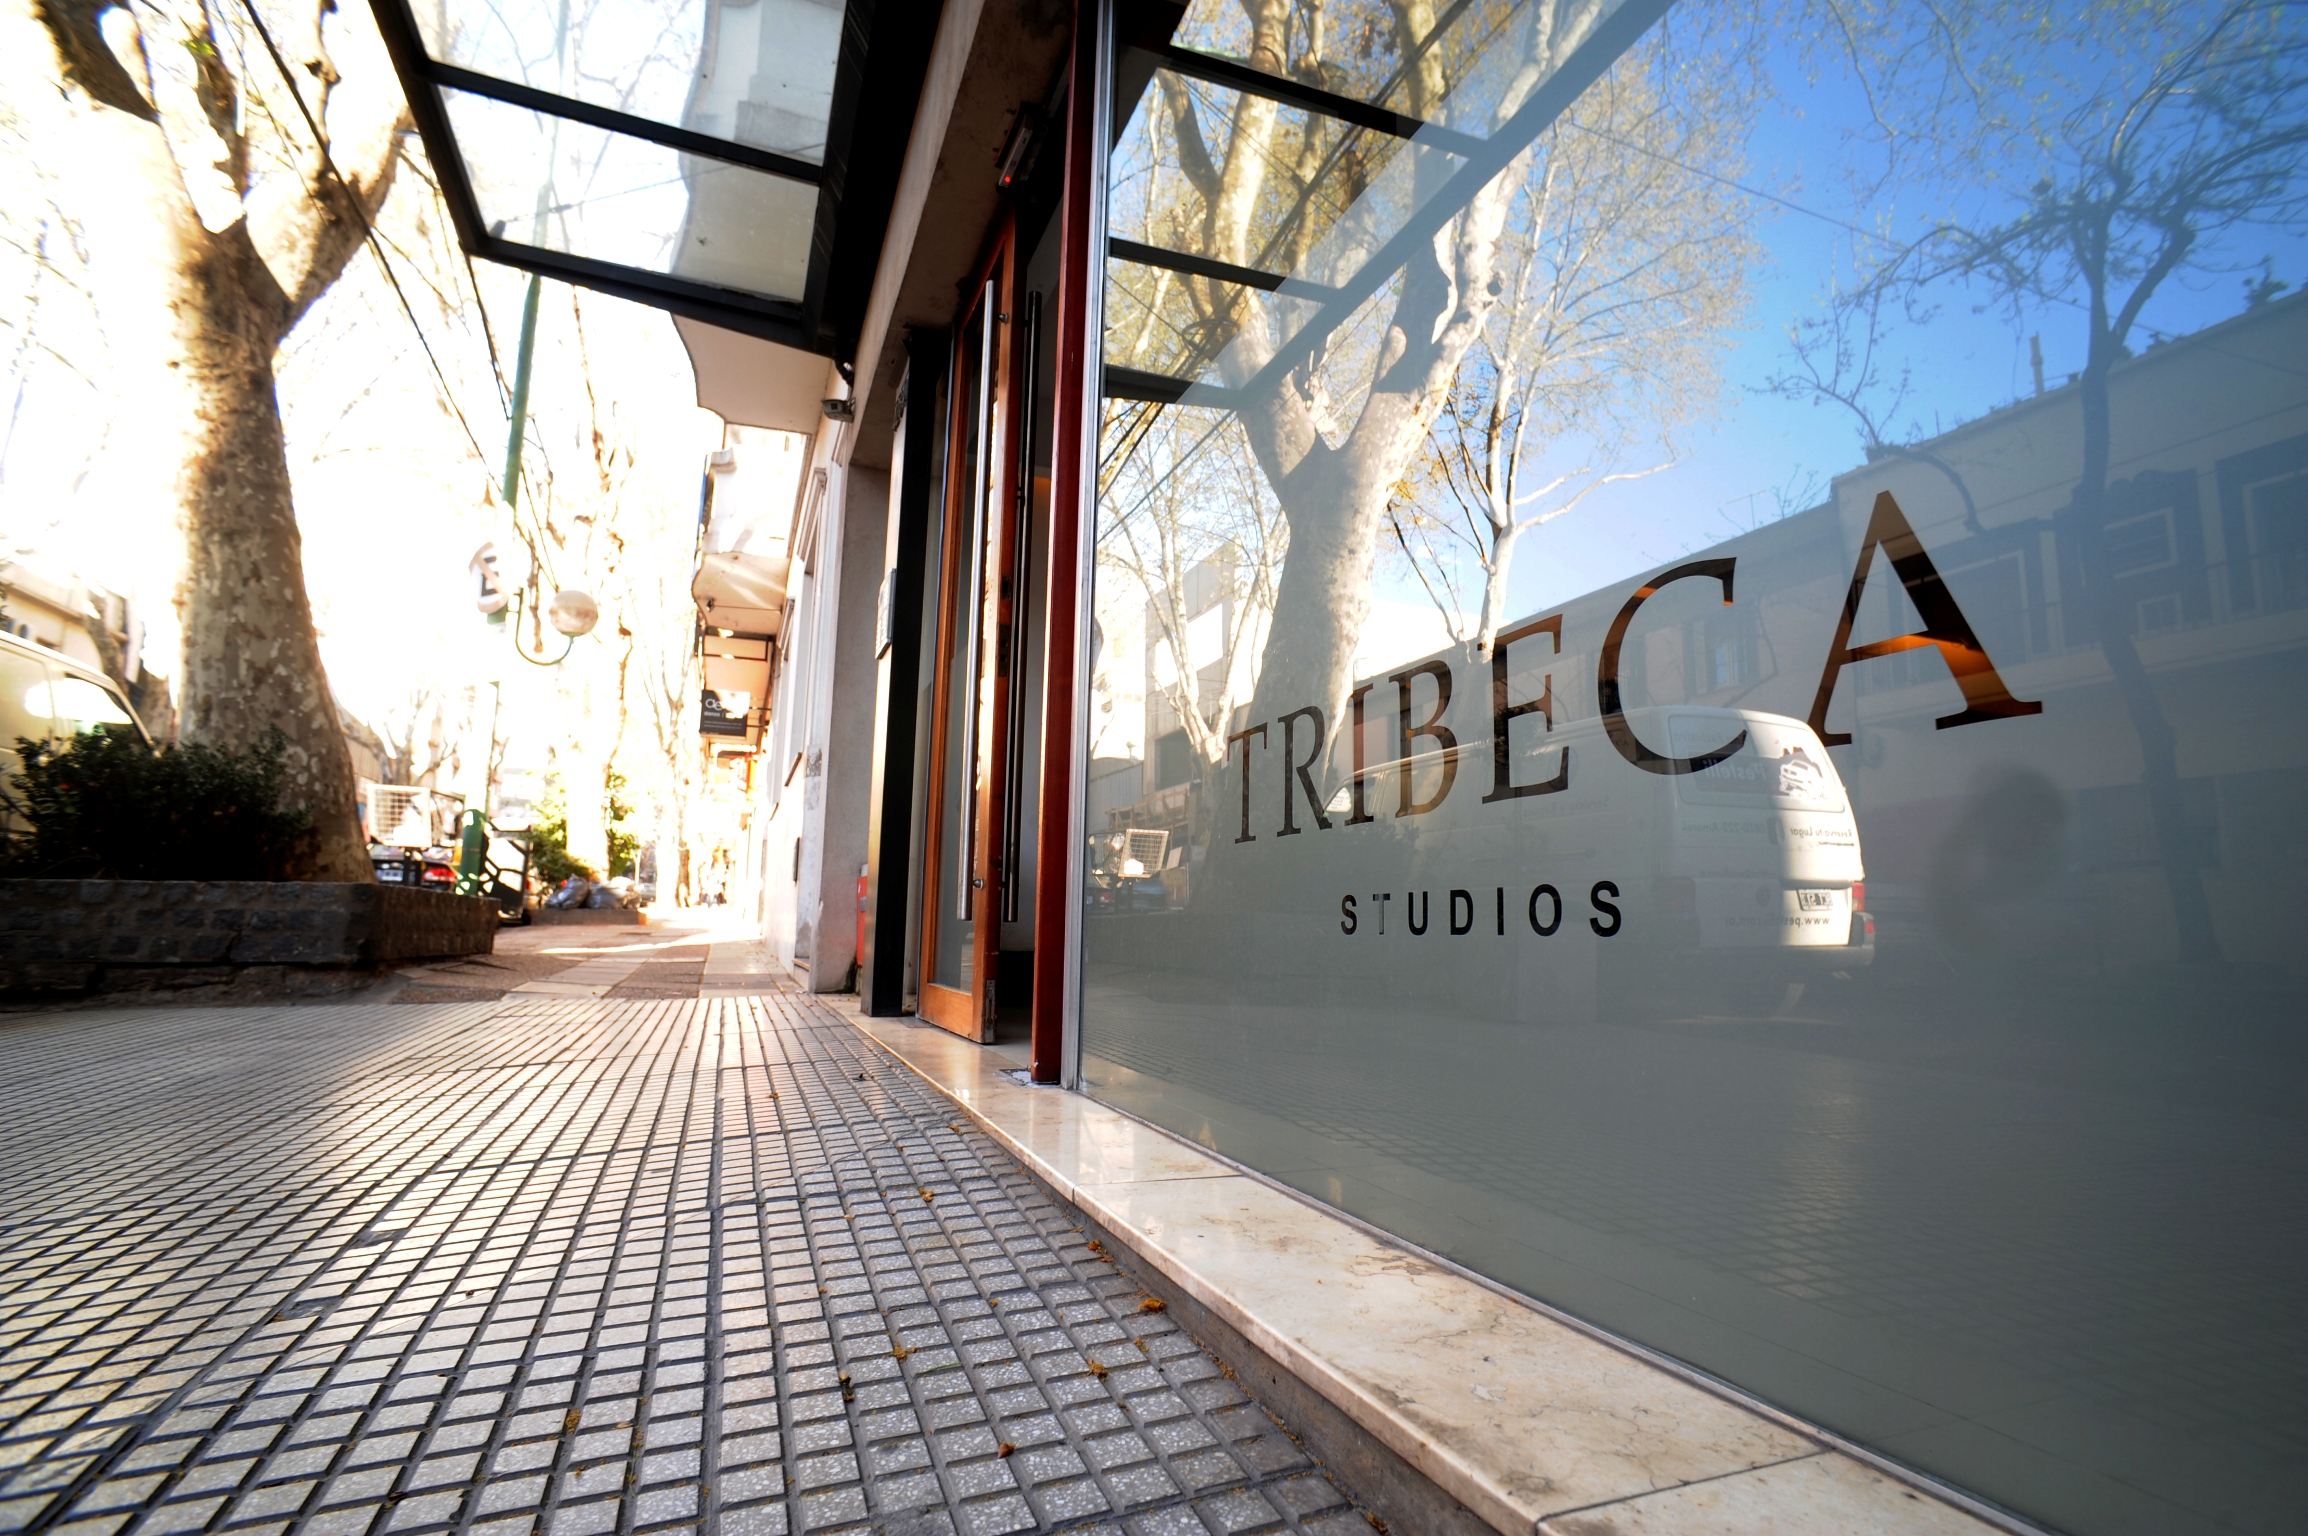 Tribeca Studios